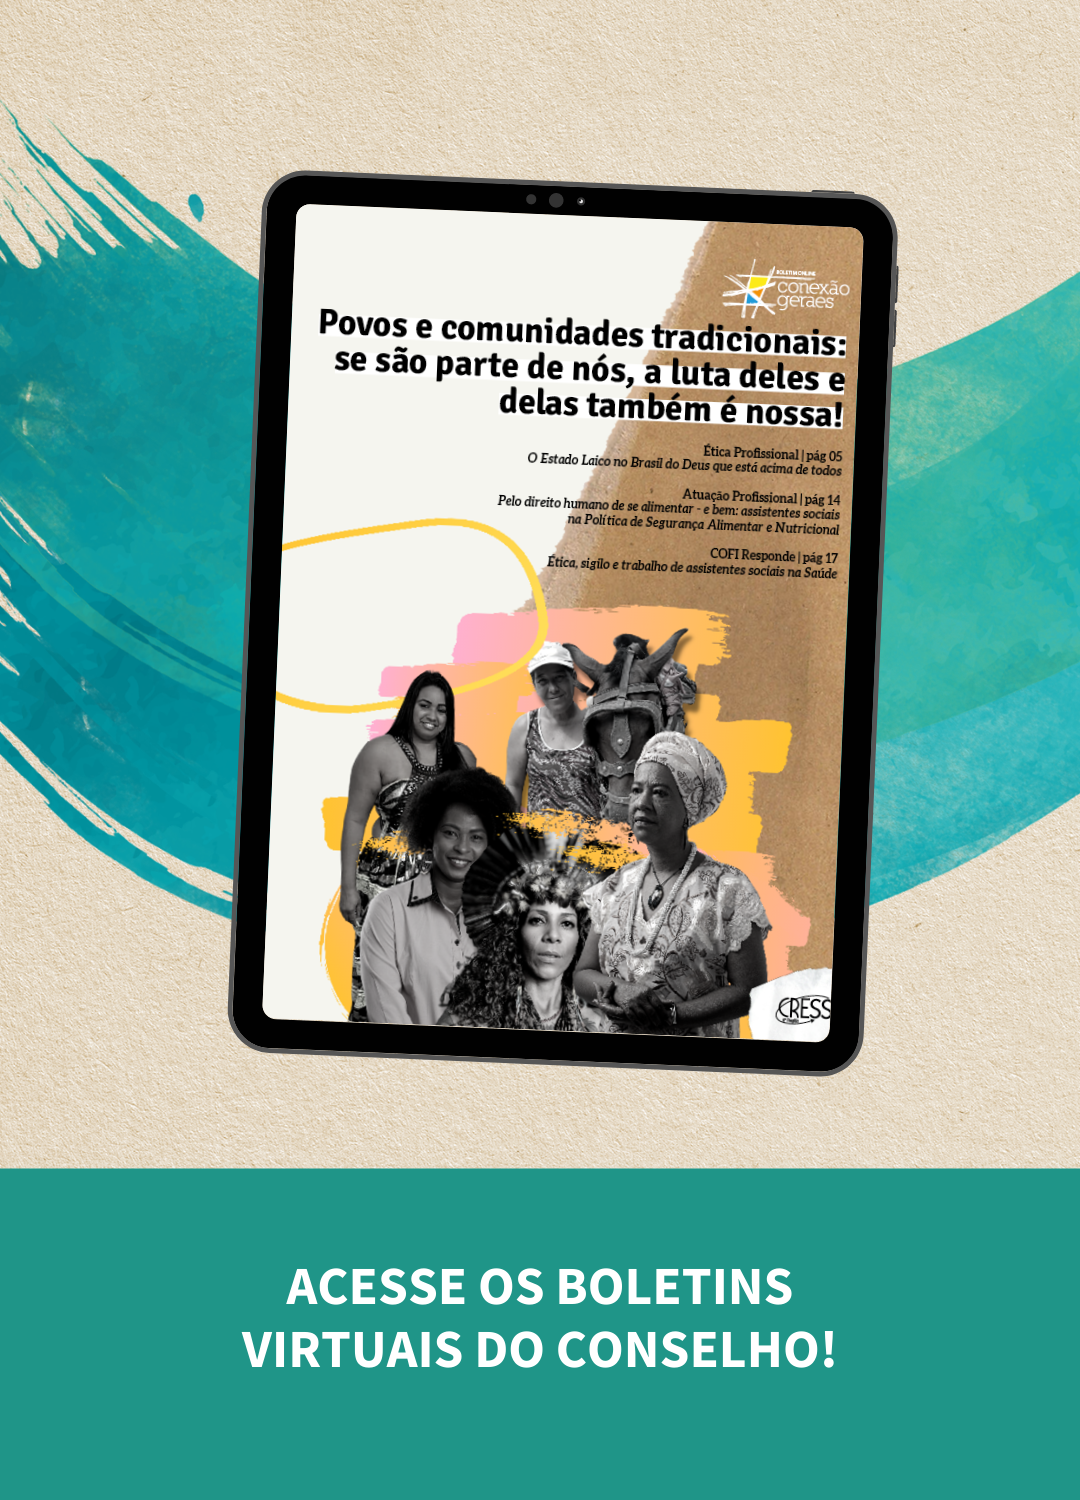 Perfil profissional de assistentes sociais de Belo Horizonte (MG